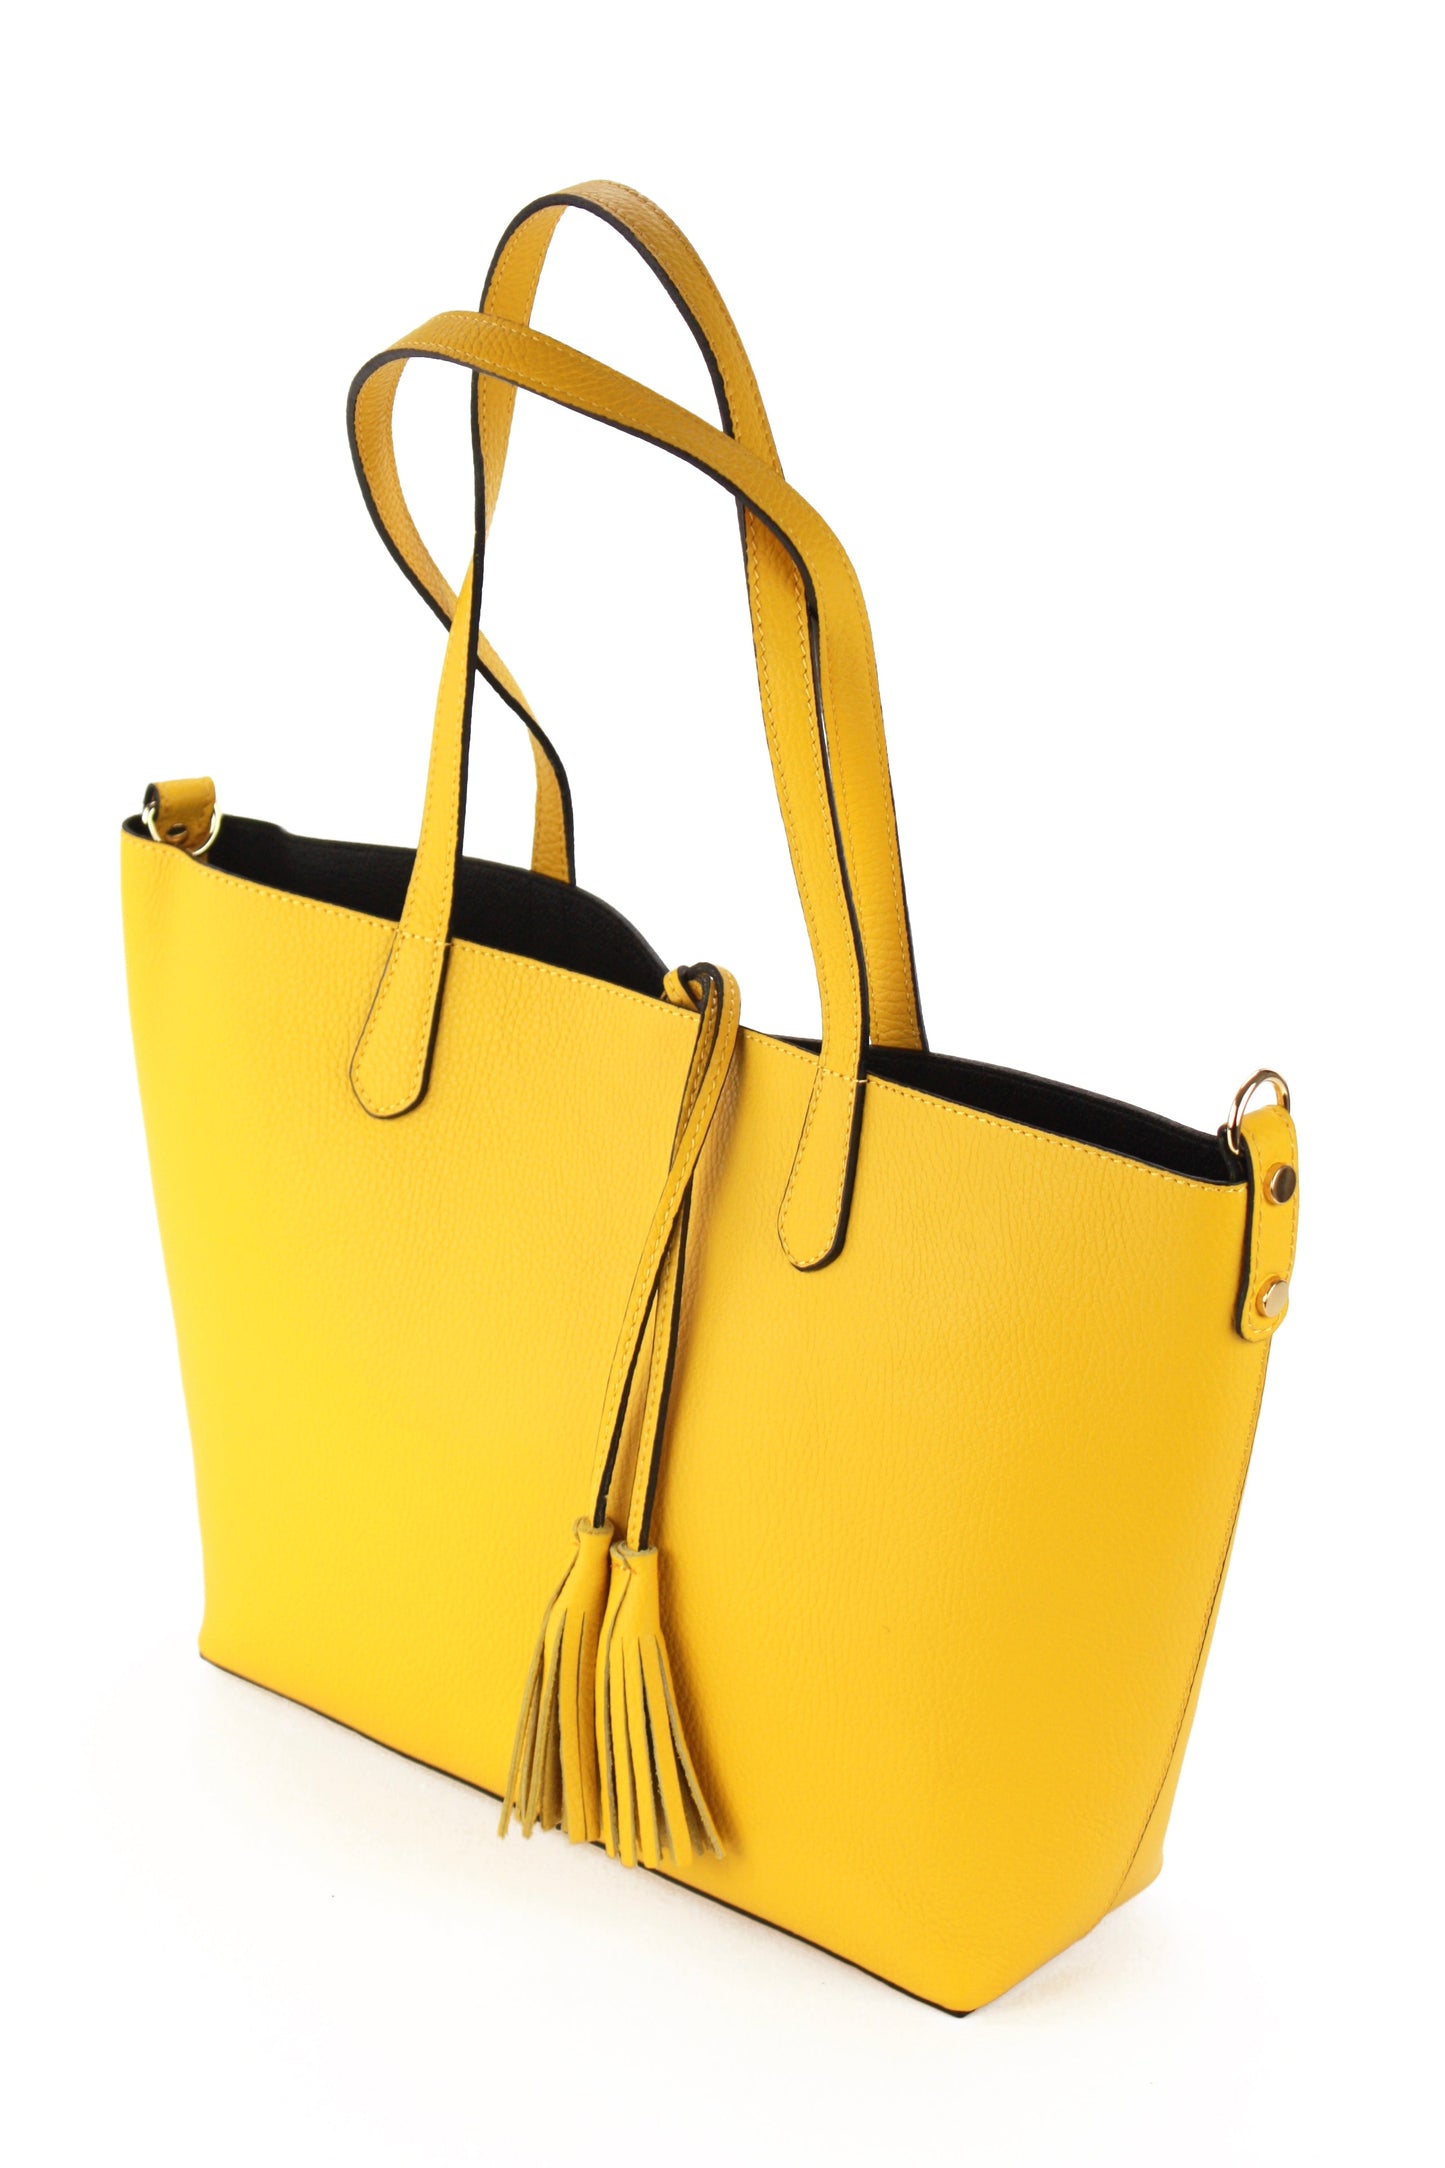 Belinda shopping bag in yellow